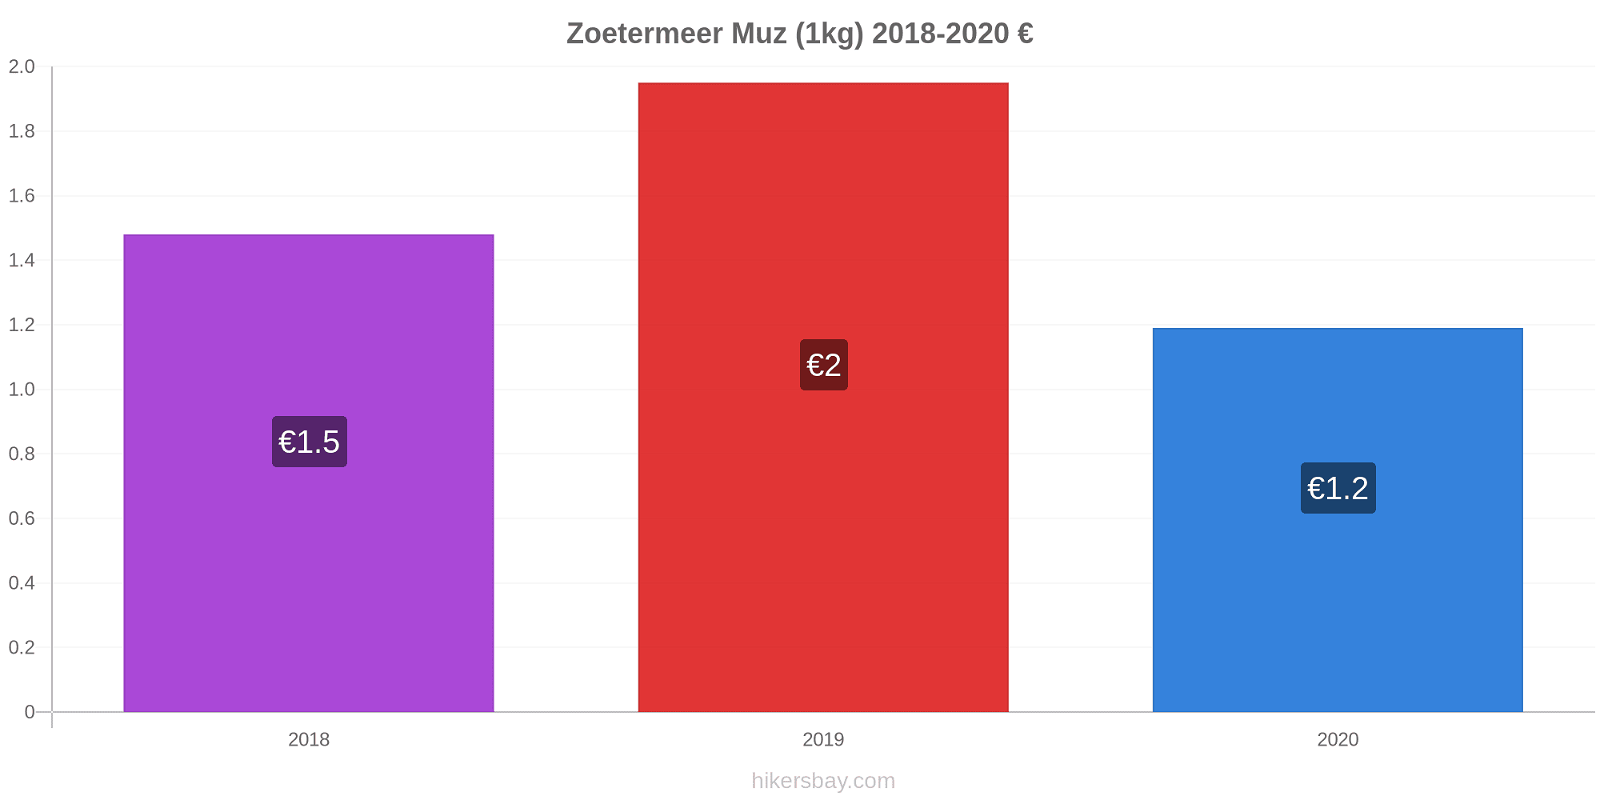 Zoetermeer fiyat değişiklikleri Muz (1kg) hikersbay.com